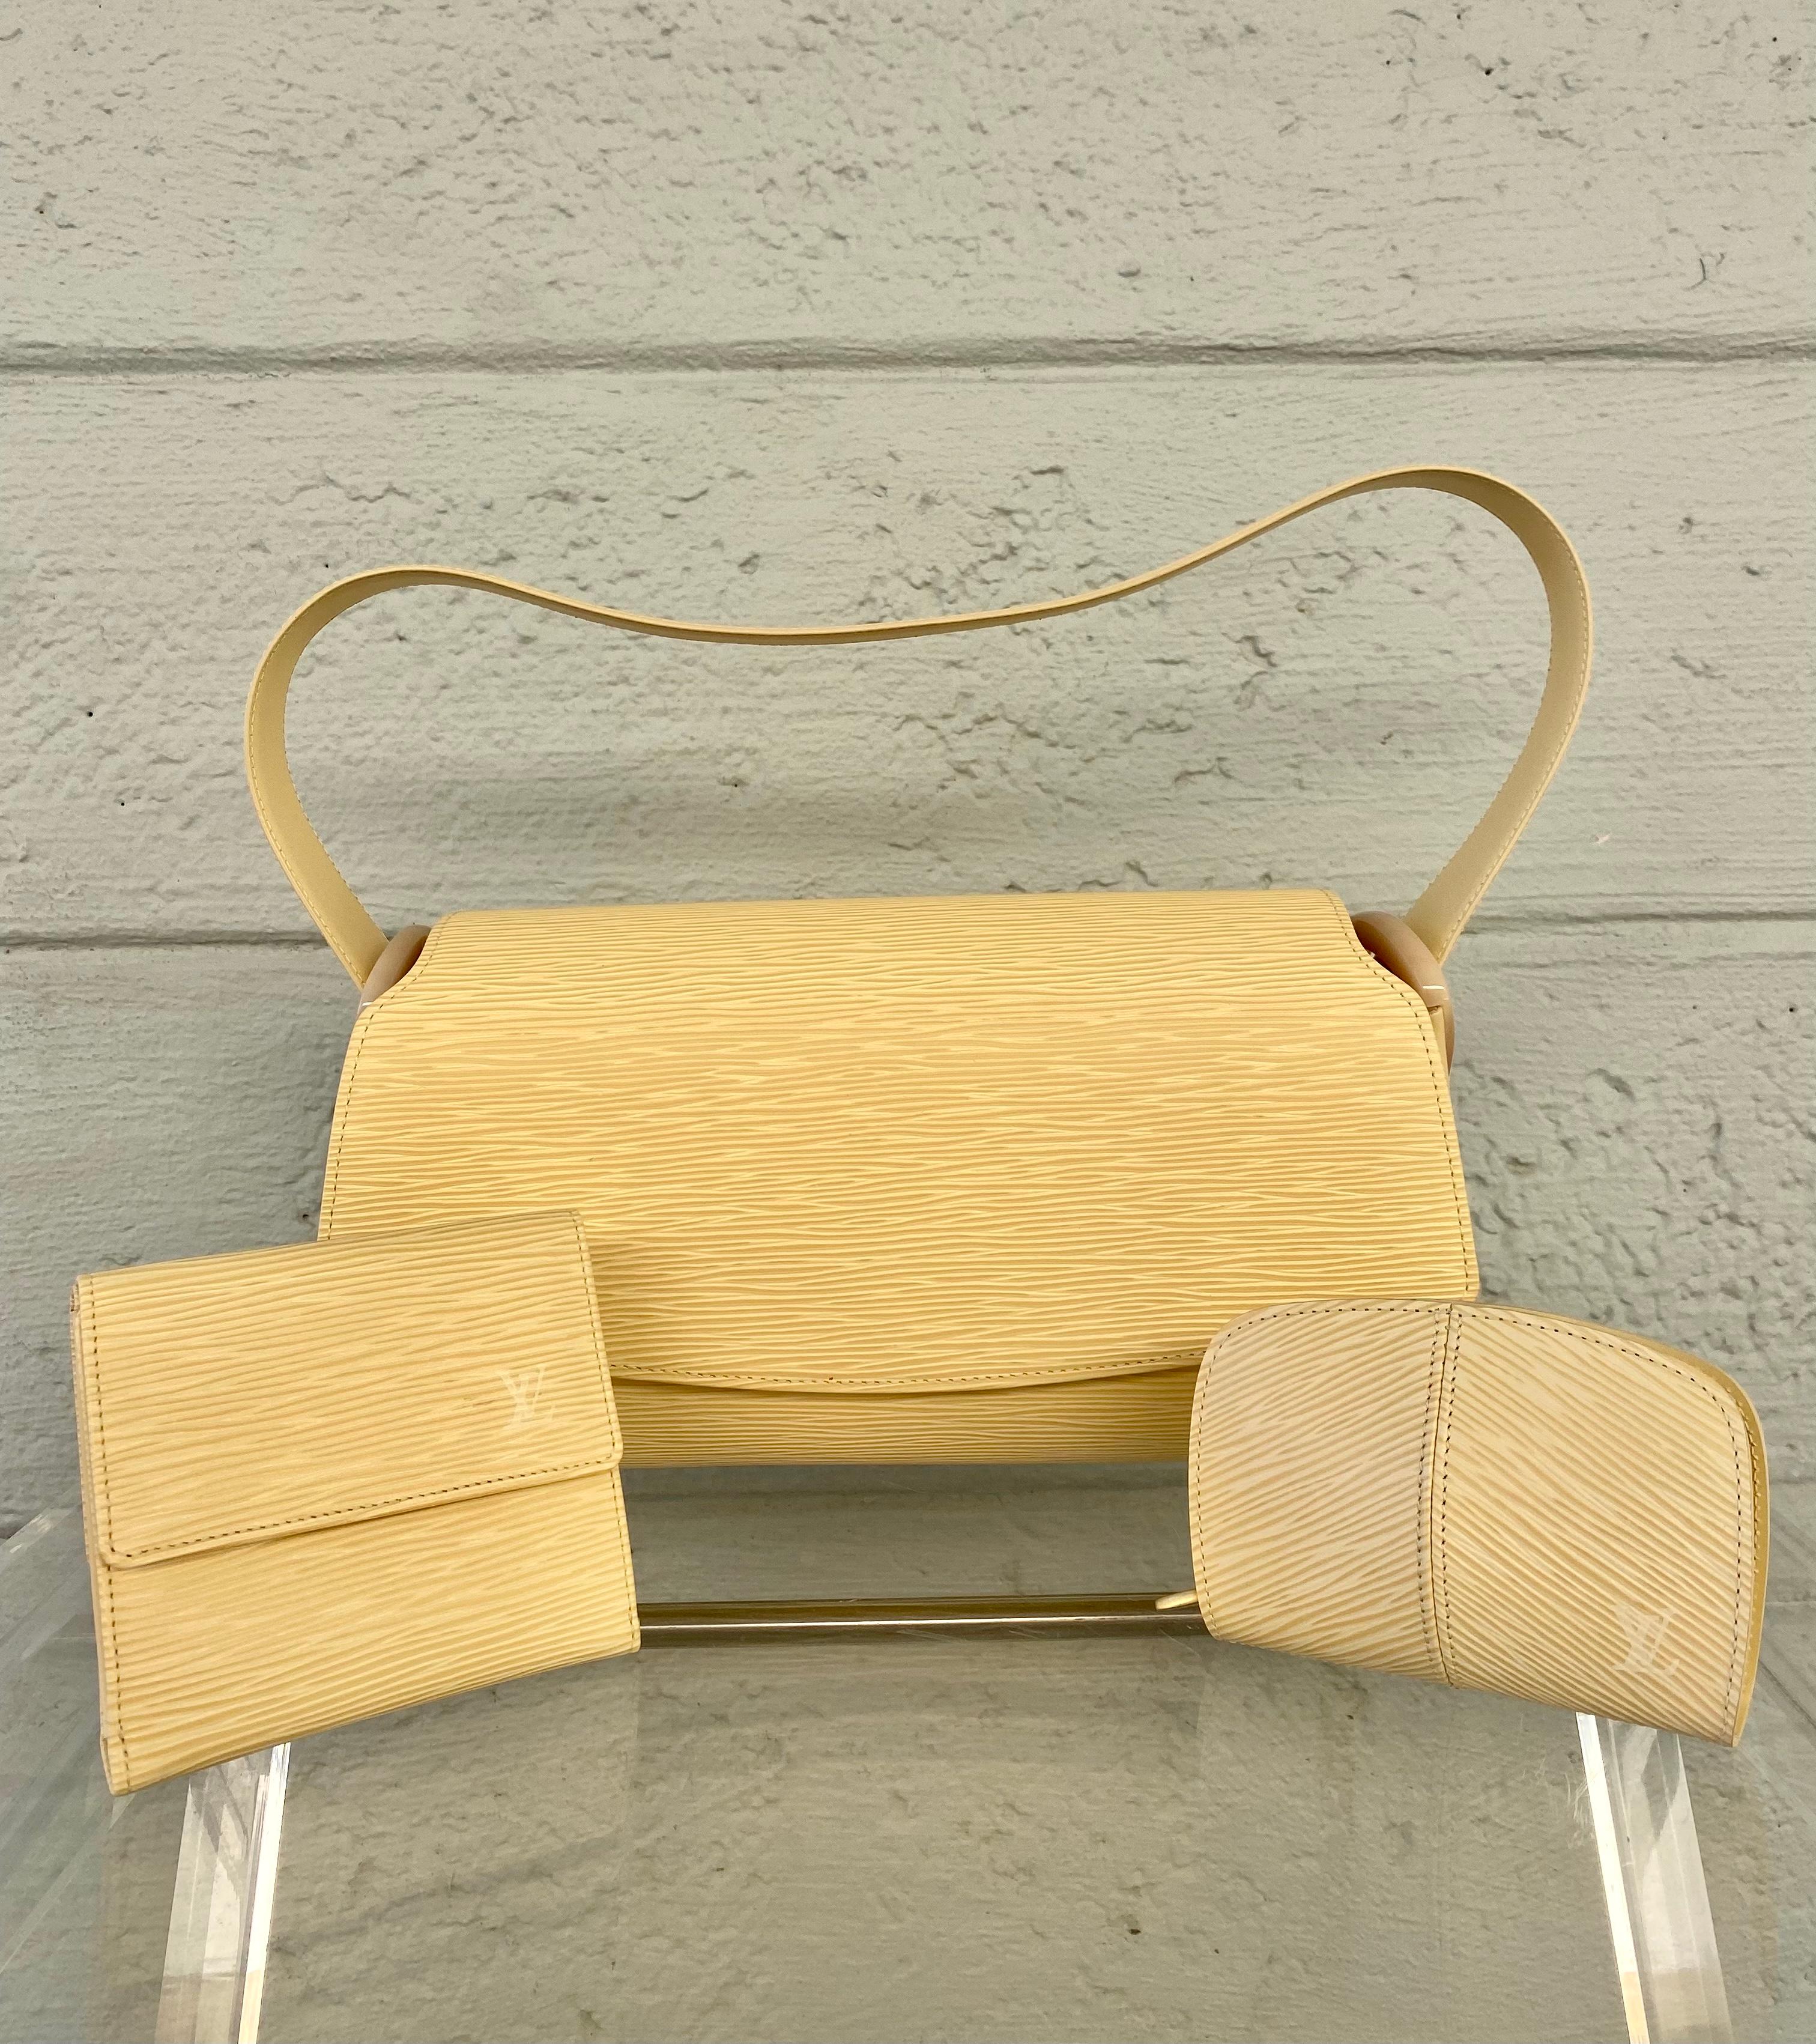 Il massimo dell'artigianato di lusso nella produzione di borse. L'iconica Maison Louis Vuitton ci offre sempre pezzi classici e senza tempo. Questa bellissima borsa porta una creazione senza tempo a un nuovo livello di raffinatezza e fascino.